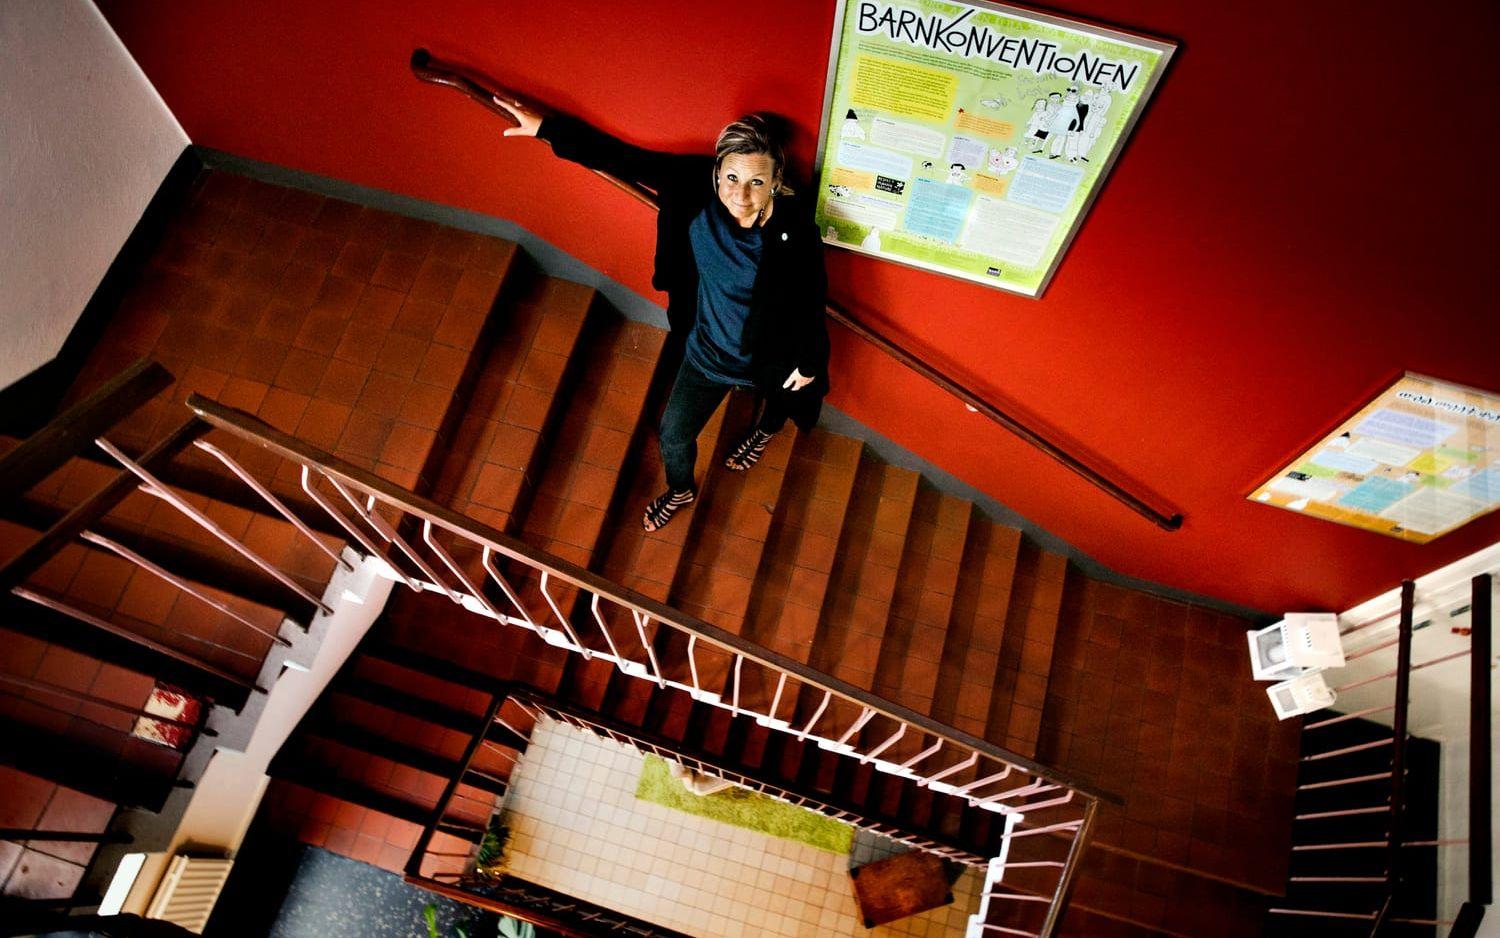 BARNPERSPEKTIV. I trappan på Reningsborg finns barnkonventionen på svenska, engelska, arabiska och flera andra språk. Bild: Per Wahlberg